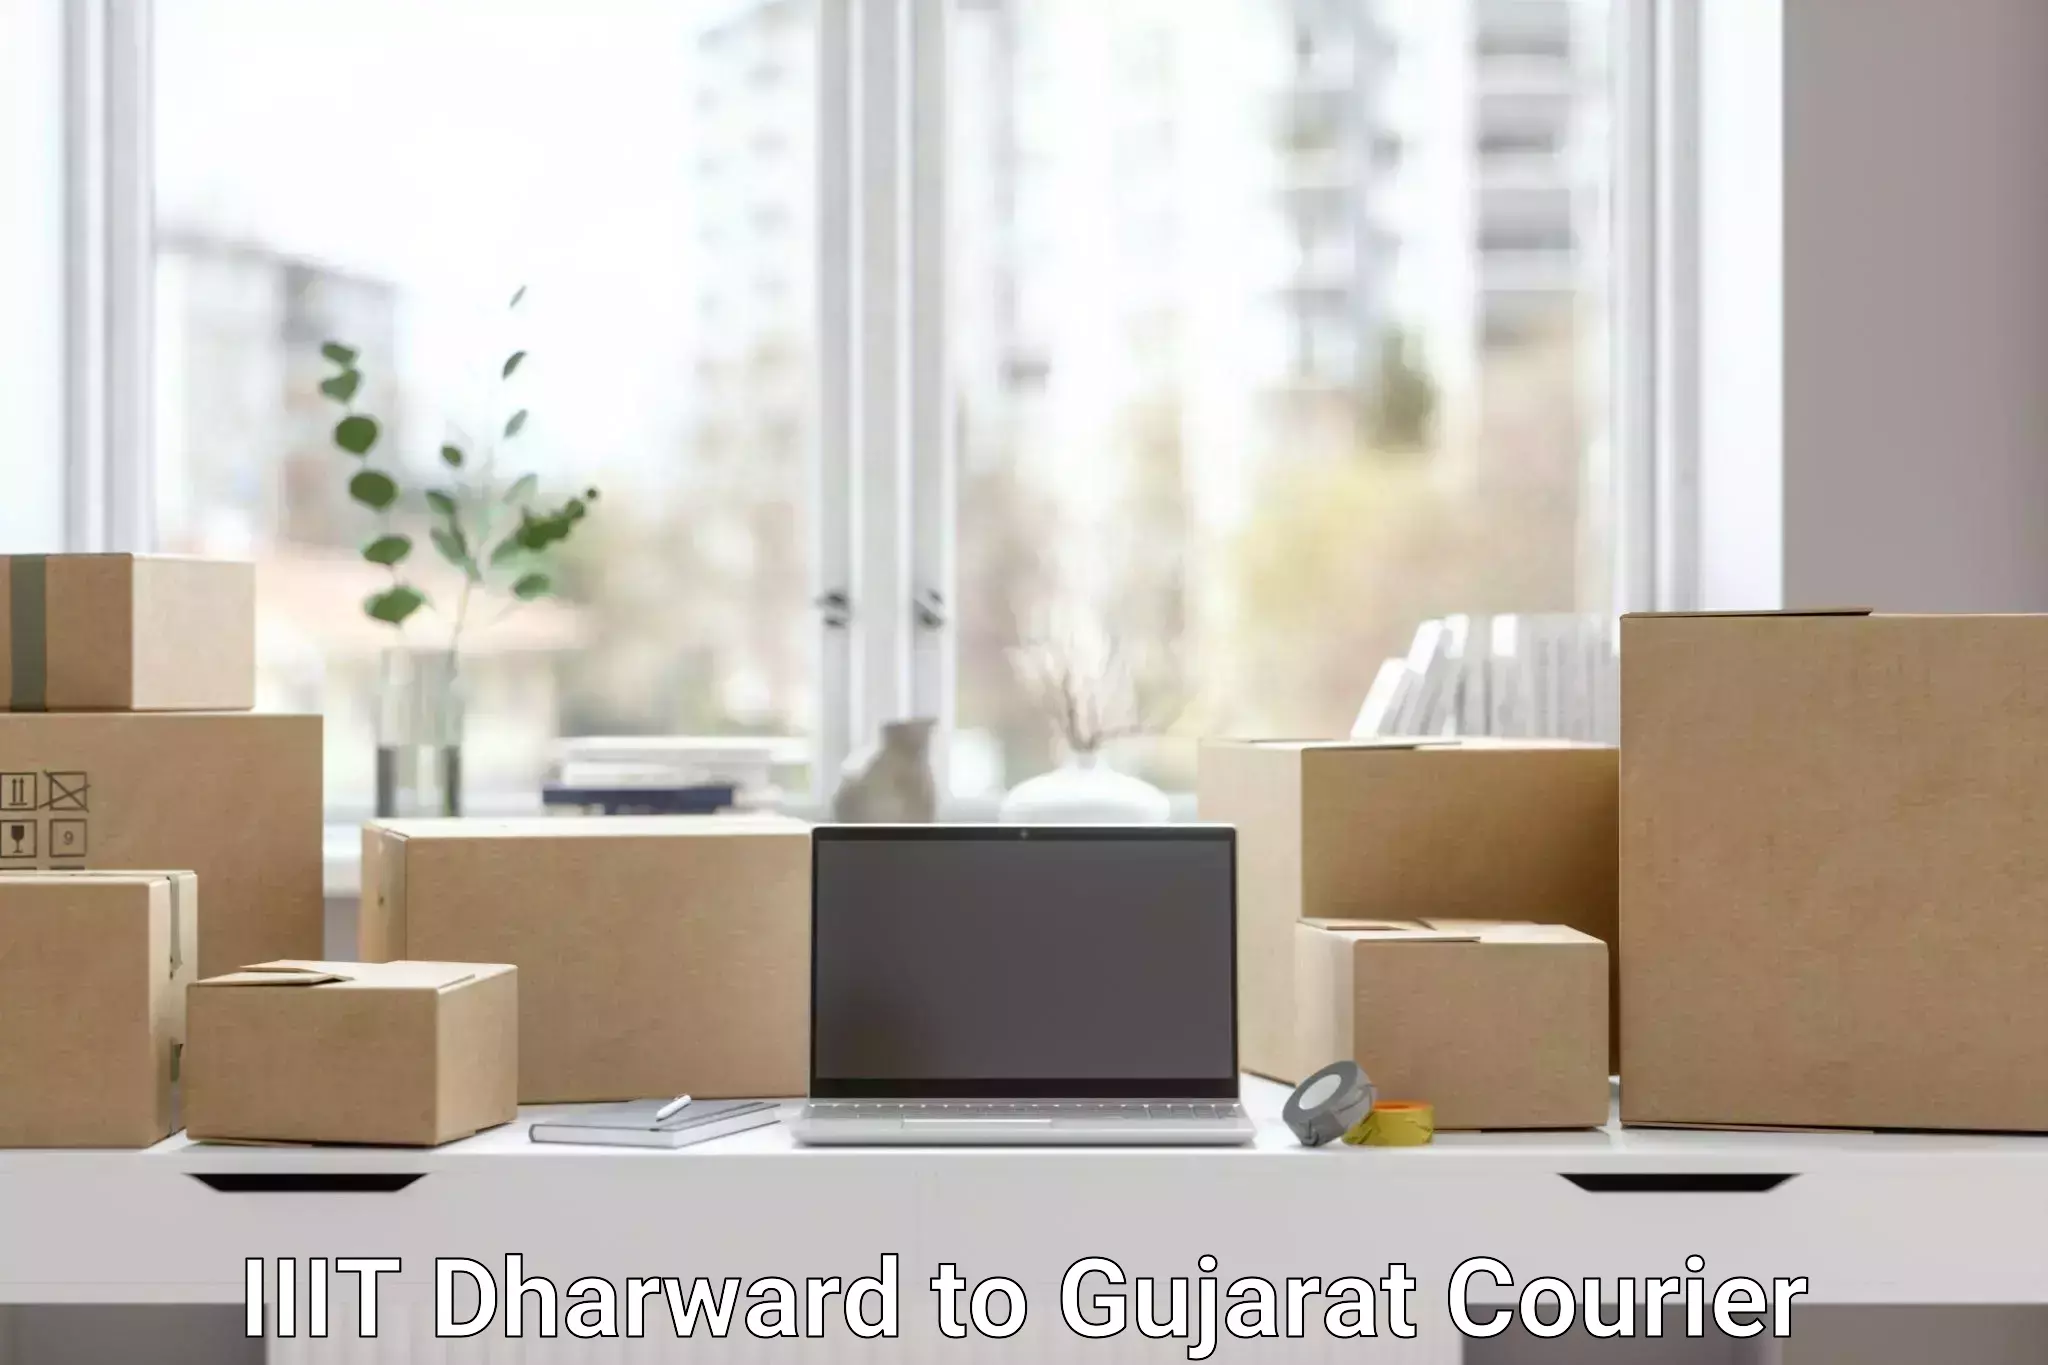 Smart logistics solutions IIIT Dharward to Gujarat